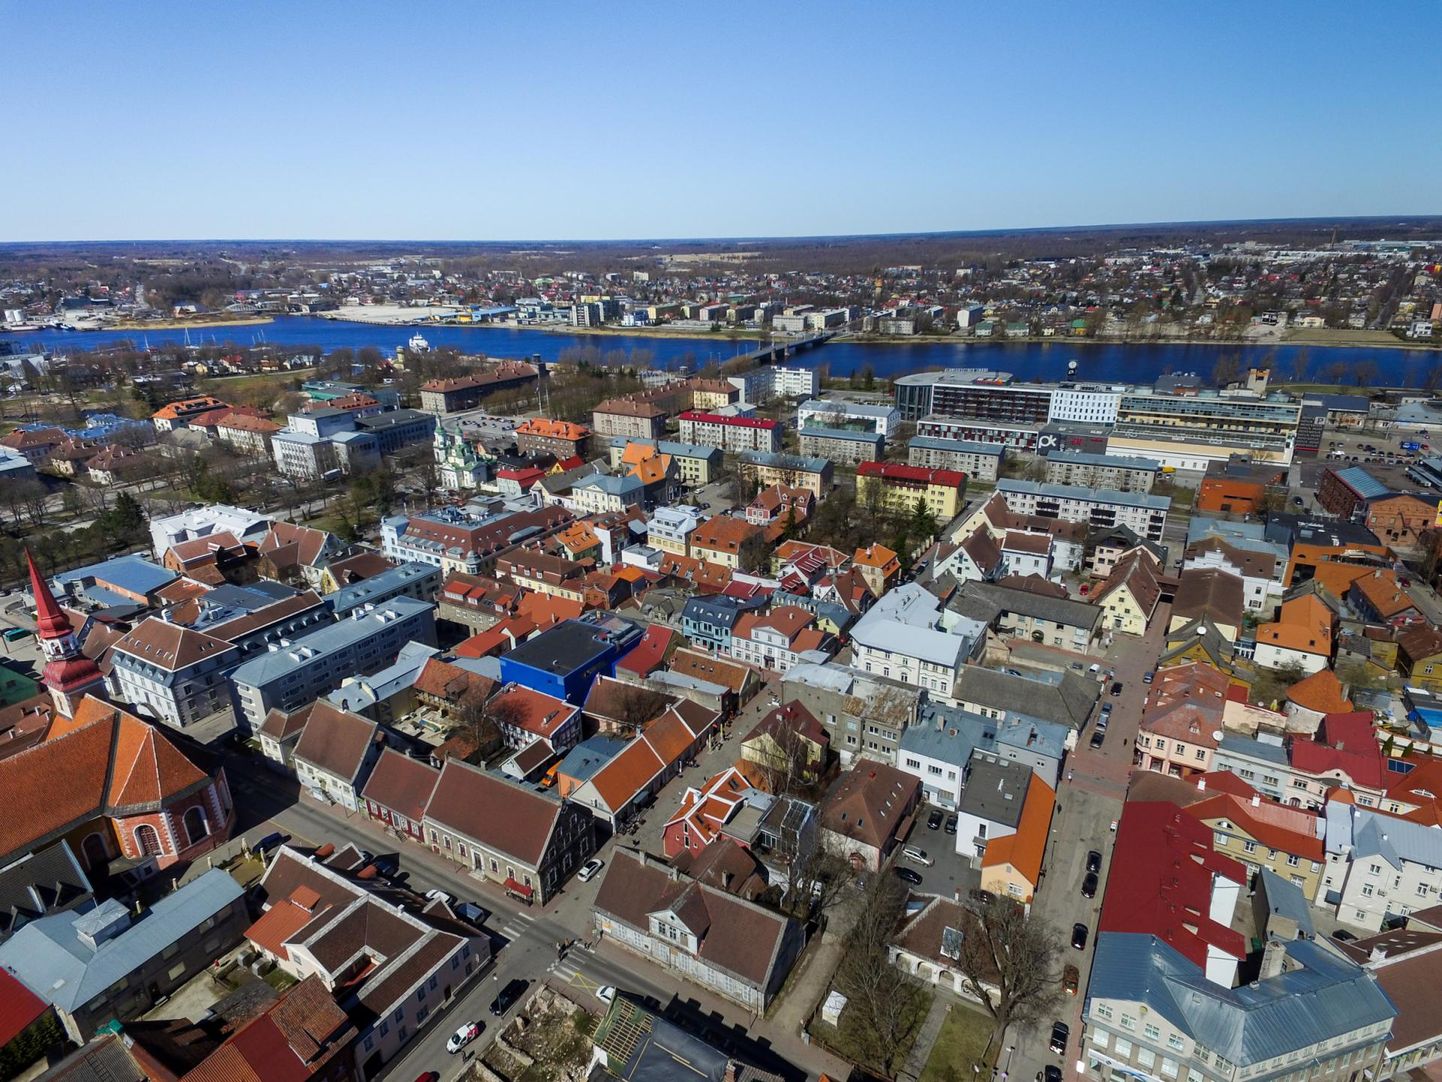 Kui 1. jaanuaril võinuks Pärnu linn rõõmust lakke karata, sest üle aastate hakkas Pärnu rahvaarv kasvama nii linnas kui sellega haldusreformis ühinenud valdadega liidetult, siis tänaseks puudub selleks igasugune alus.